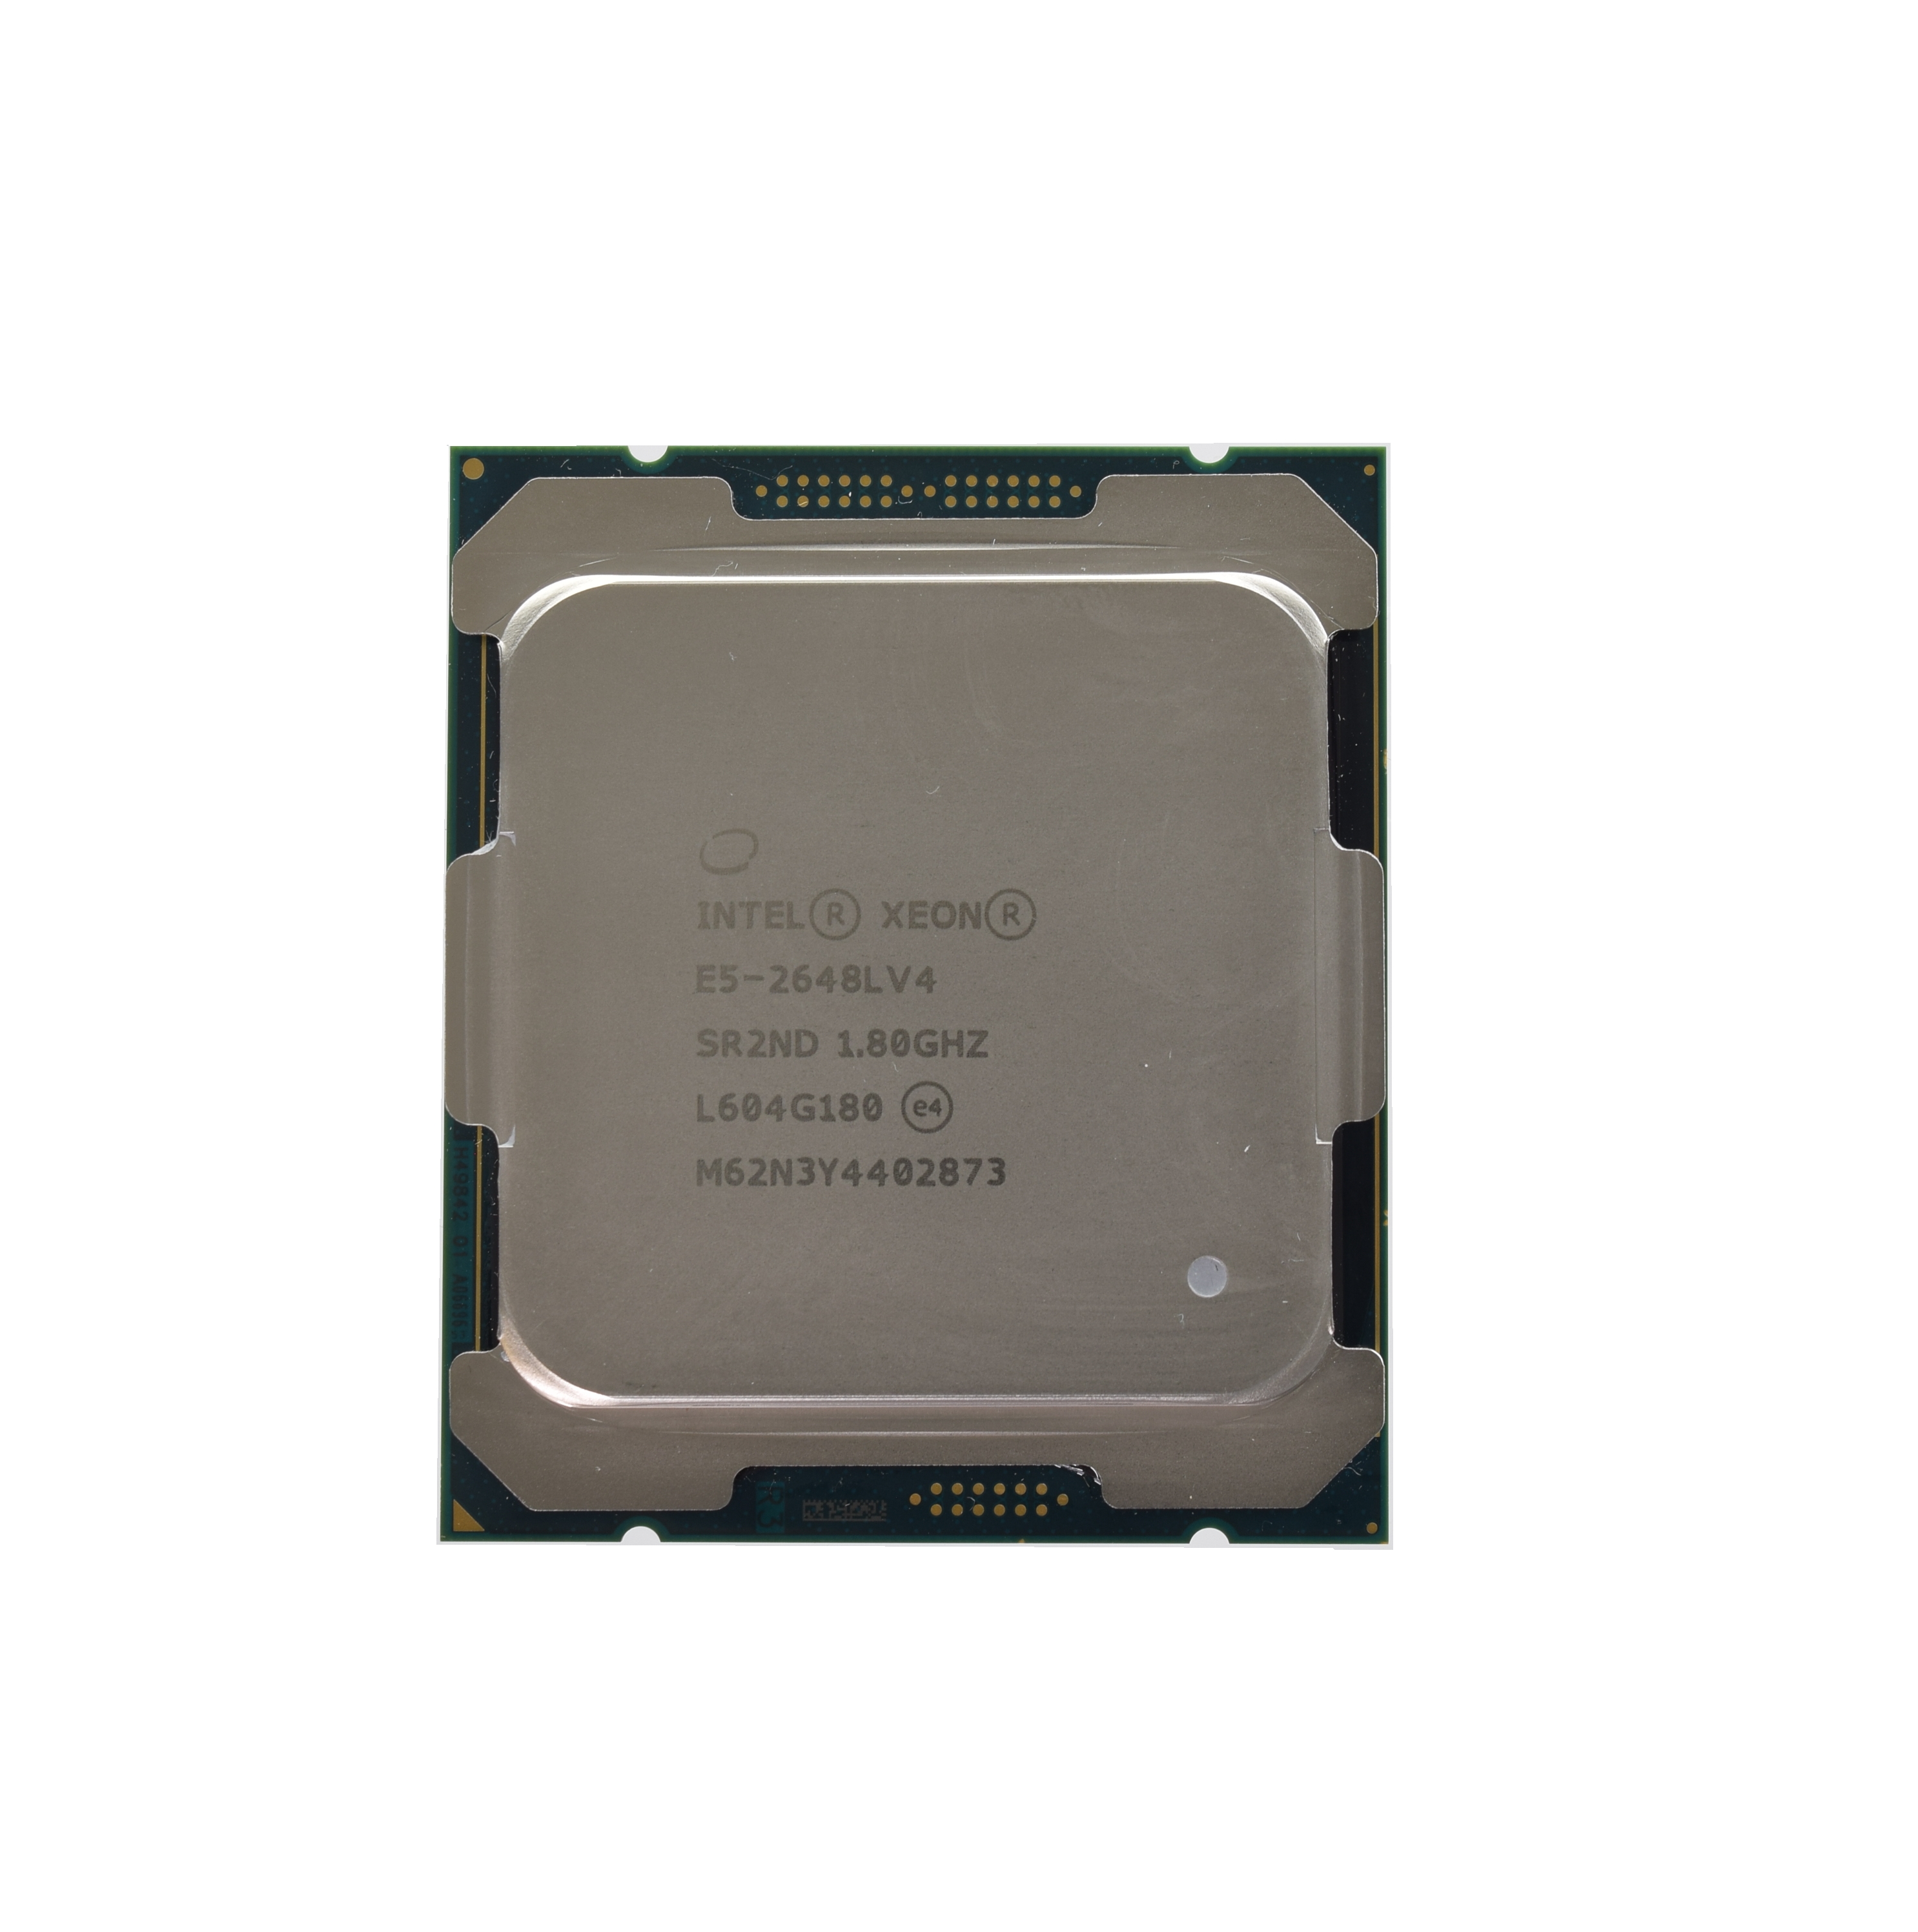 Intel Xeon E5-2648L V4 CPU Processor 14 Core 1.80GHz 35MB L3 Cache 75W SR2ND